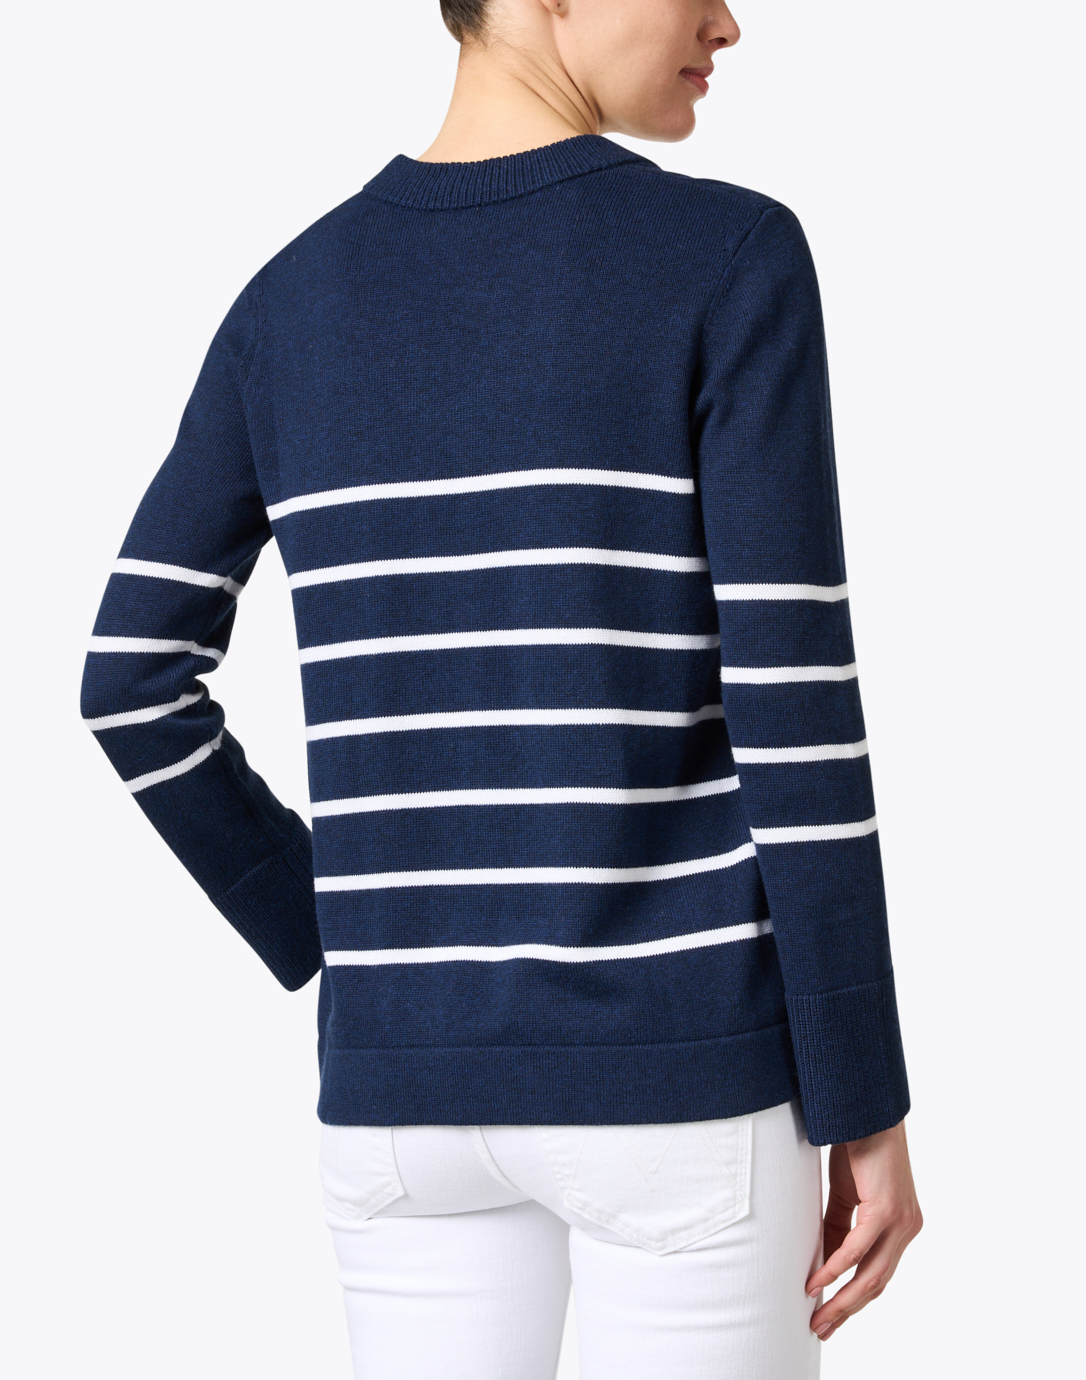 Kinross - Navy Blue Sweater - XL blog.knak.jp